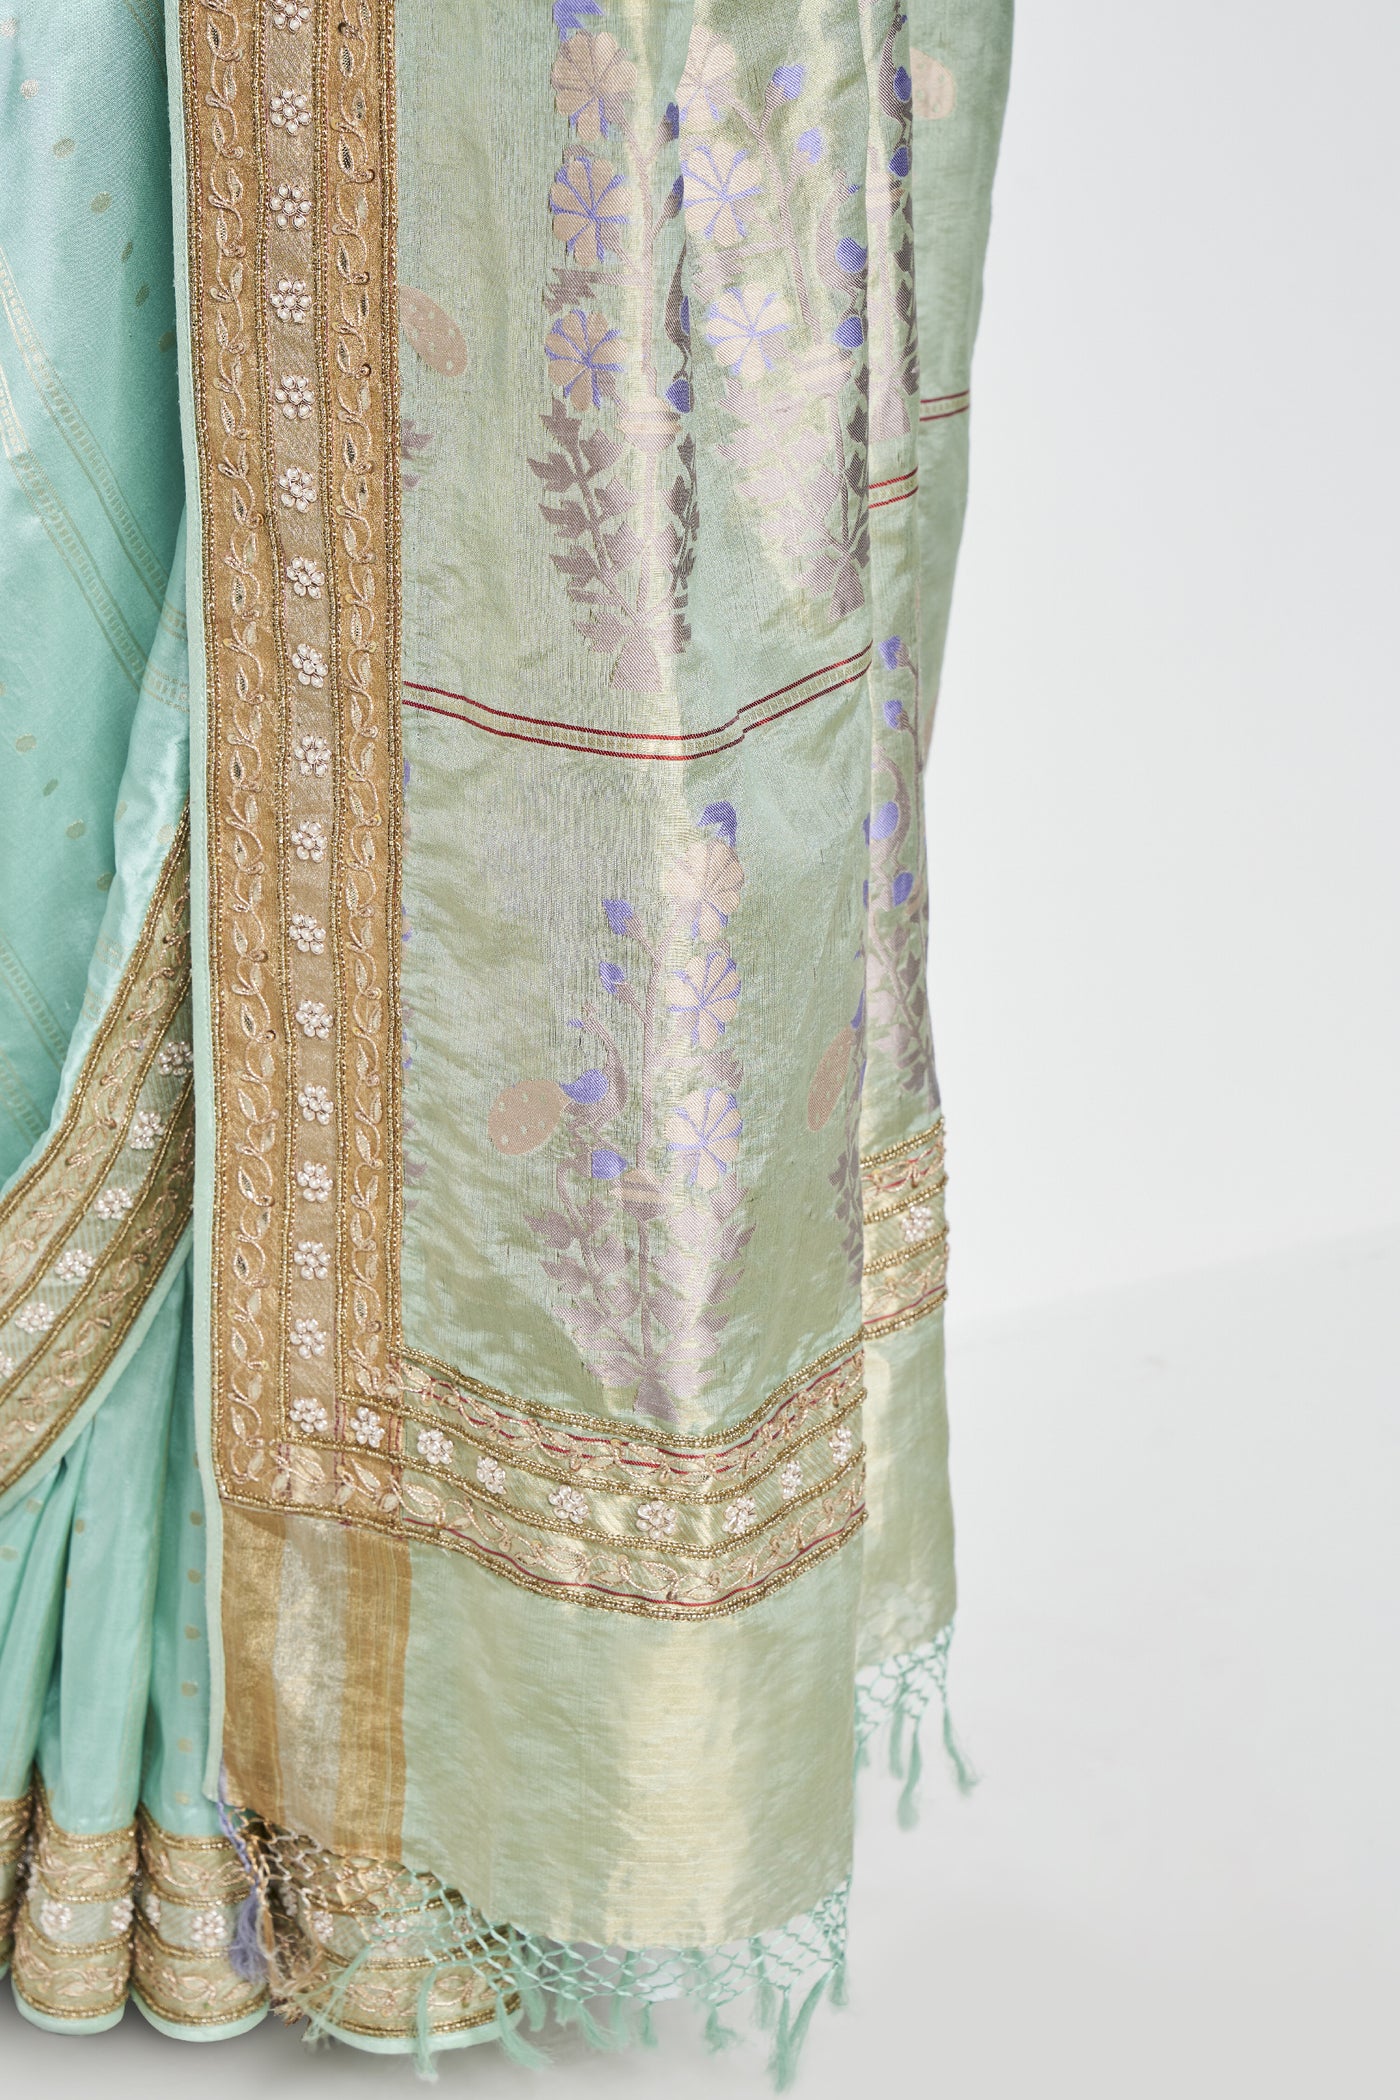 Anita Dongre Mithila Benarasi Saree Powder Blue indian designer wear online shopping melange singapore